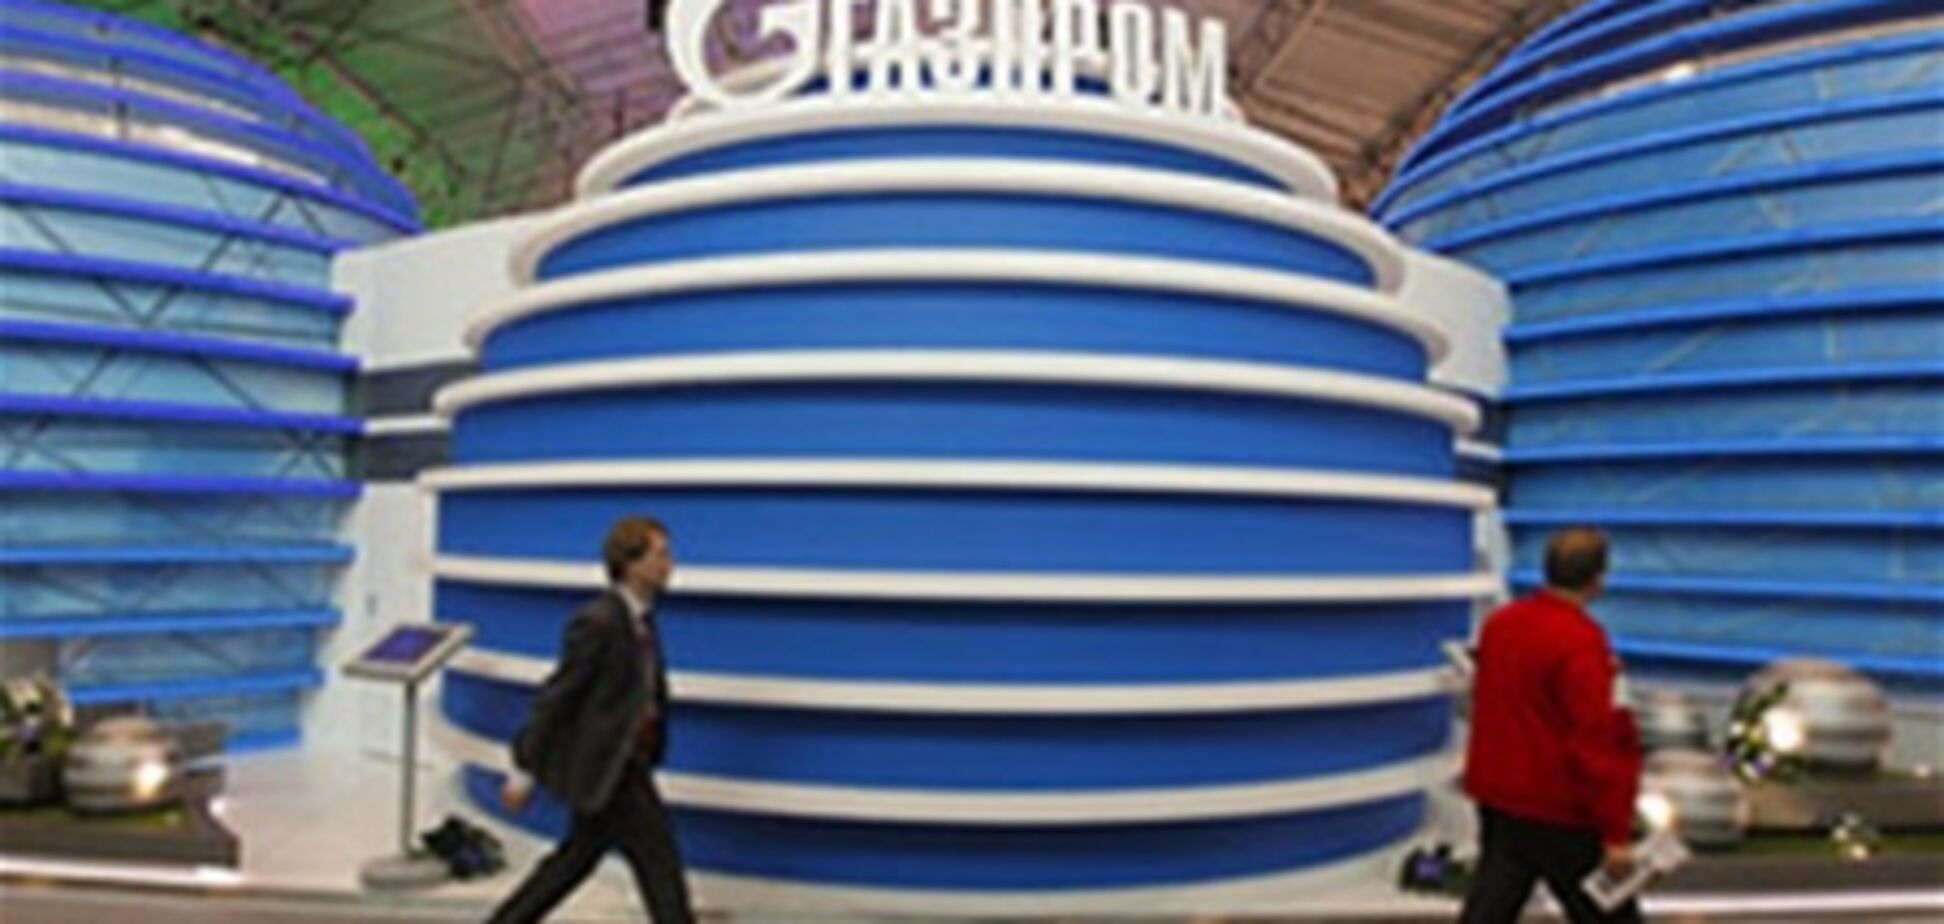 У 'Газпромі' закінчився туалетний папір - в хід пішли документи